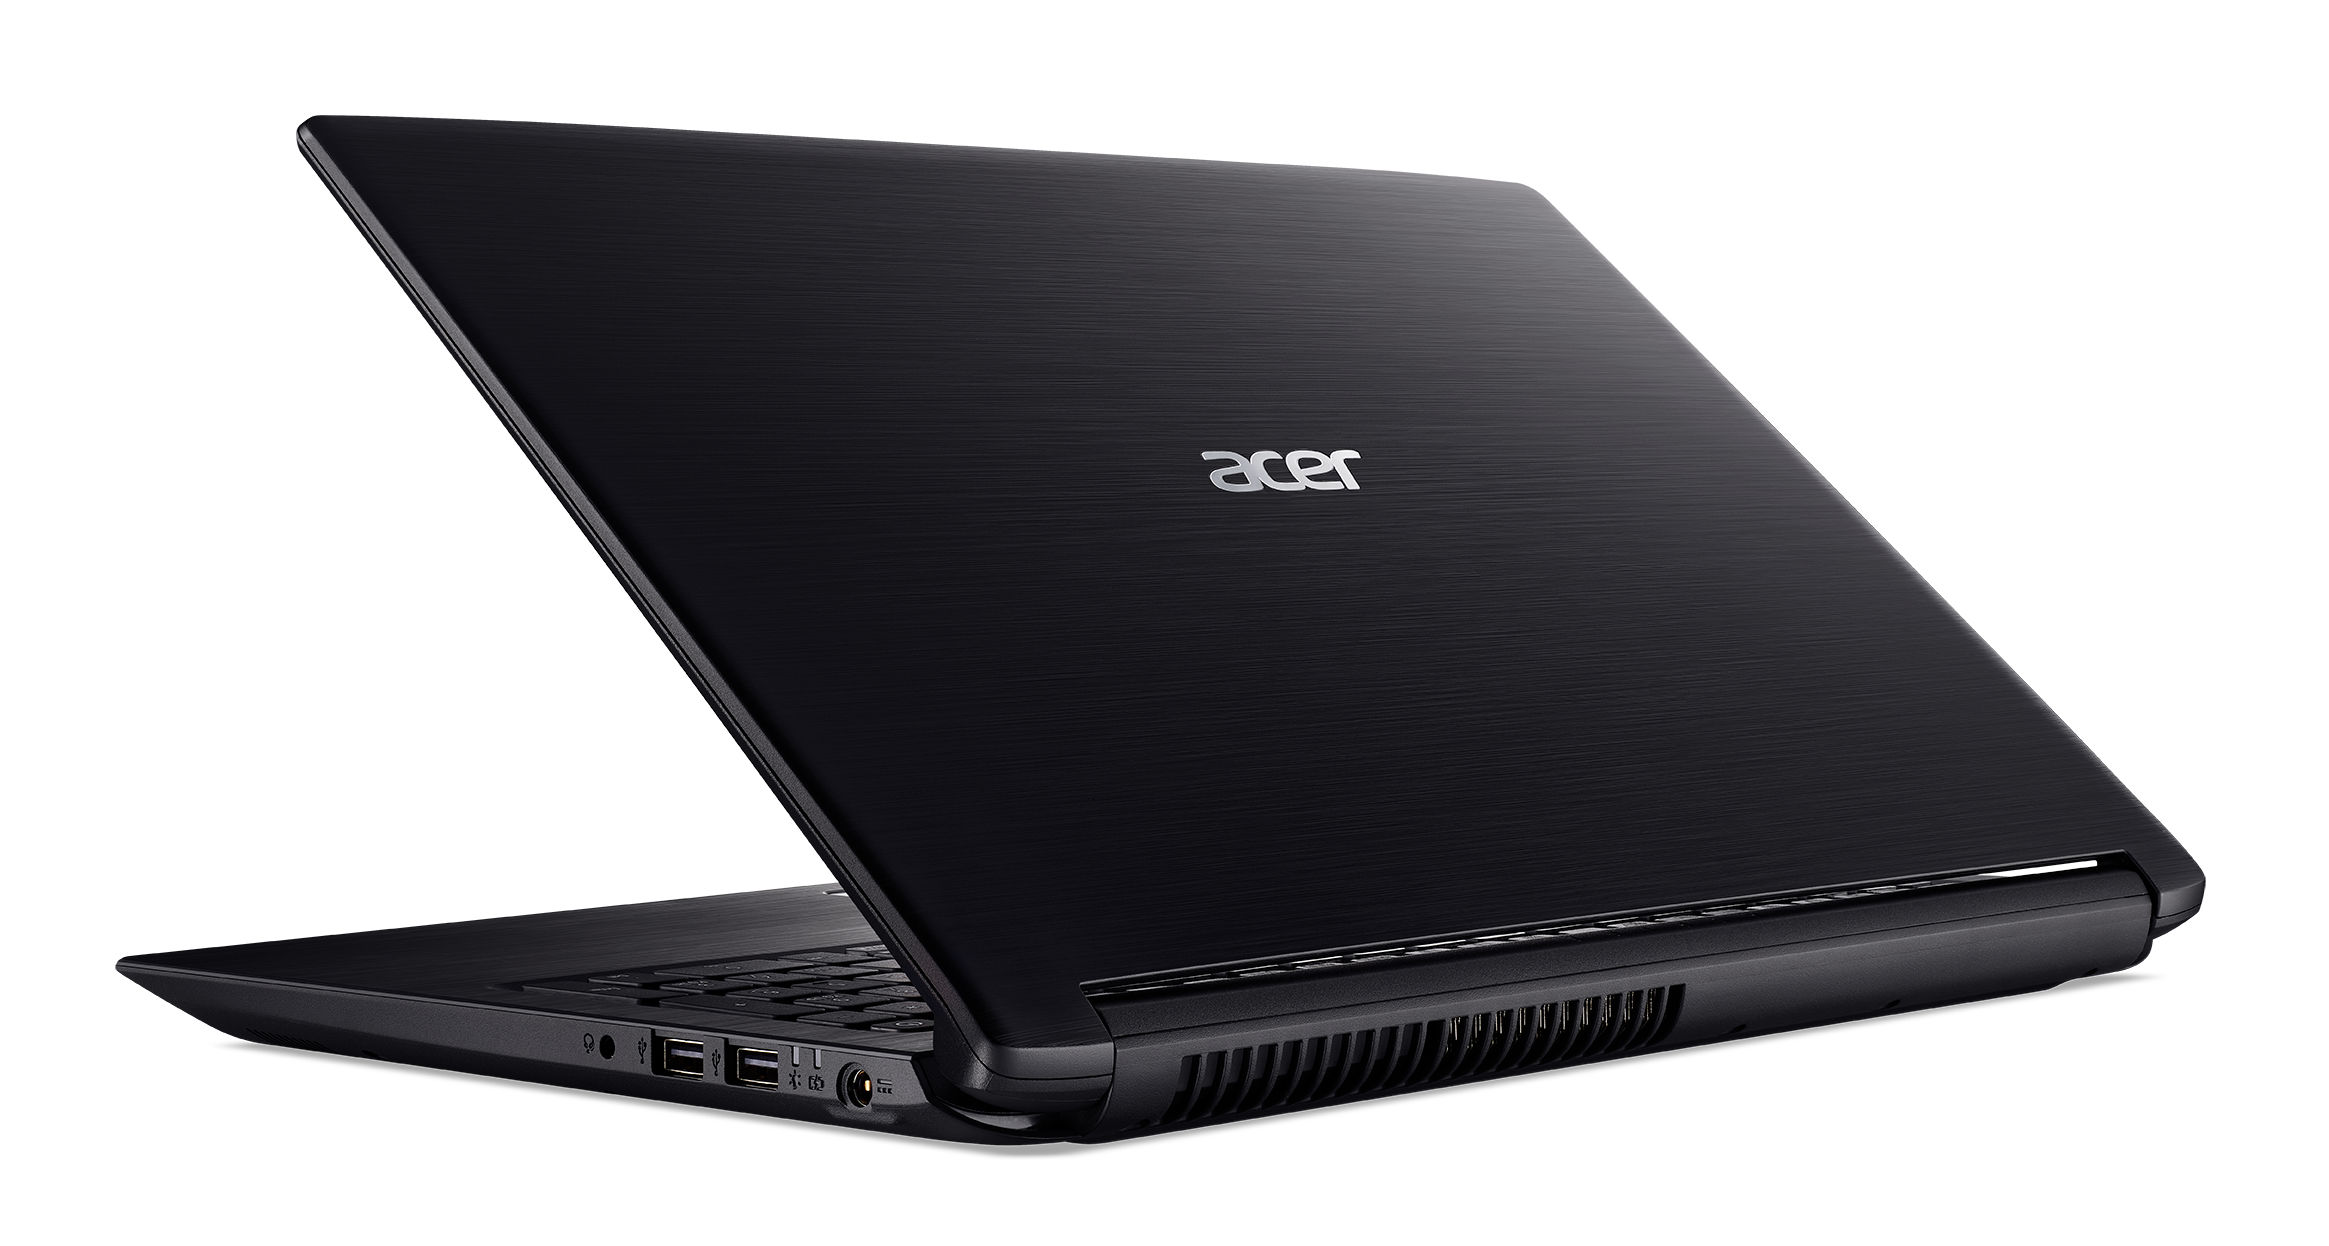 Acer Aspire 3, 15.6" HD, AMD Ryzen 5 2500U, 8GB DDR4, 1TB HDD, Windows 10 Home, A315-41-R132 - image 2 of 4